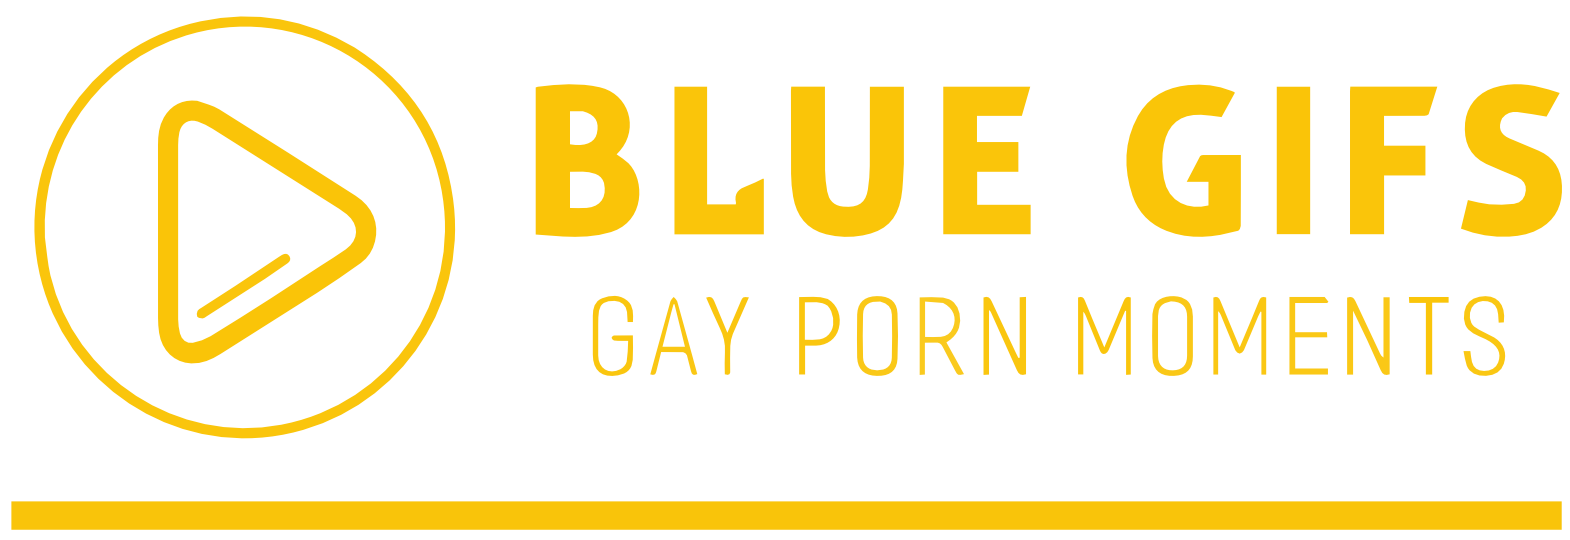 Blue Gifs